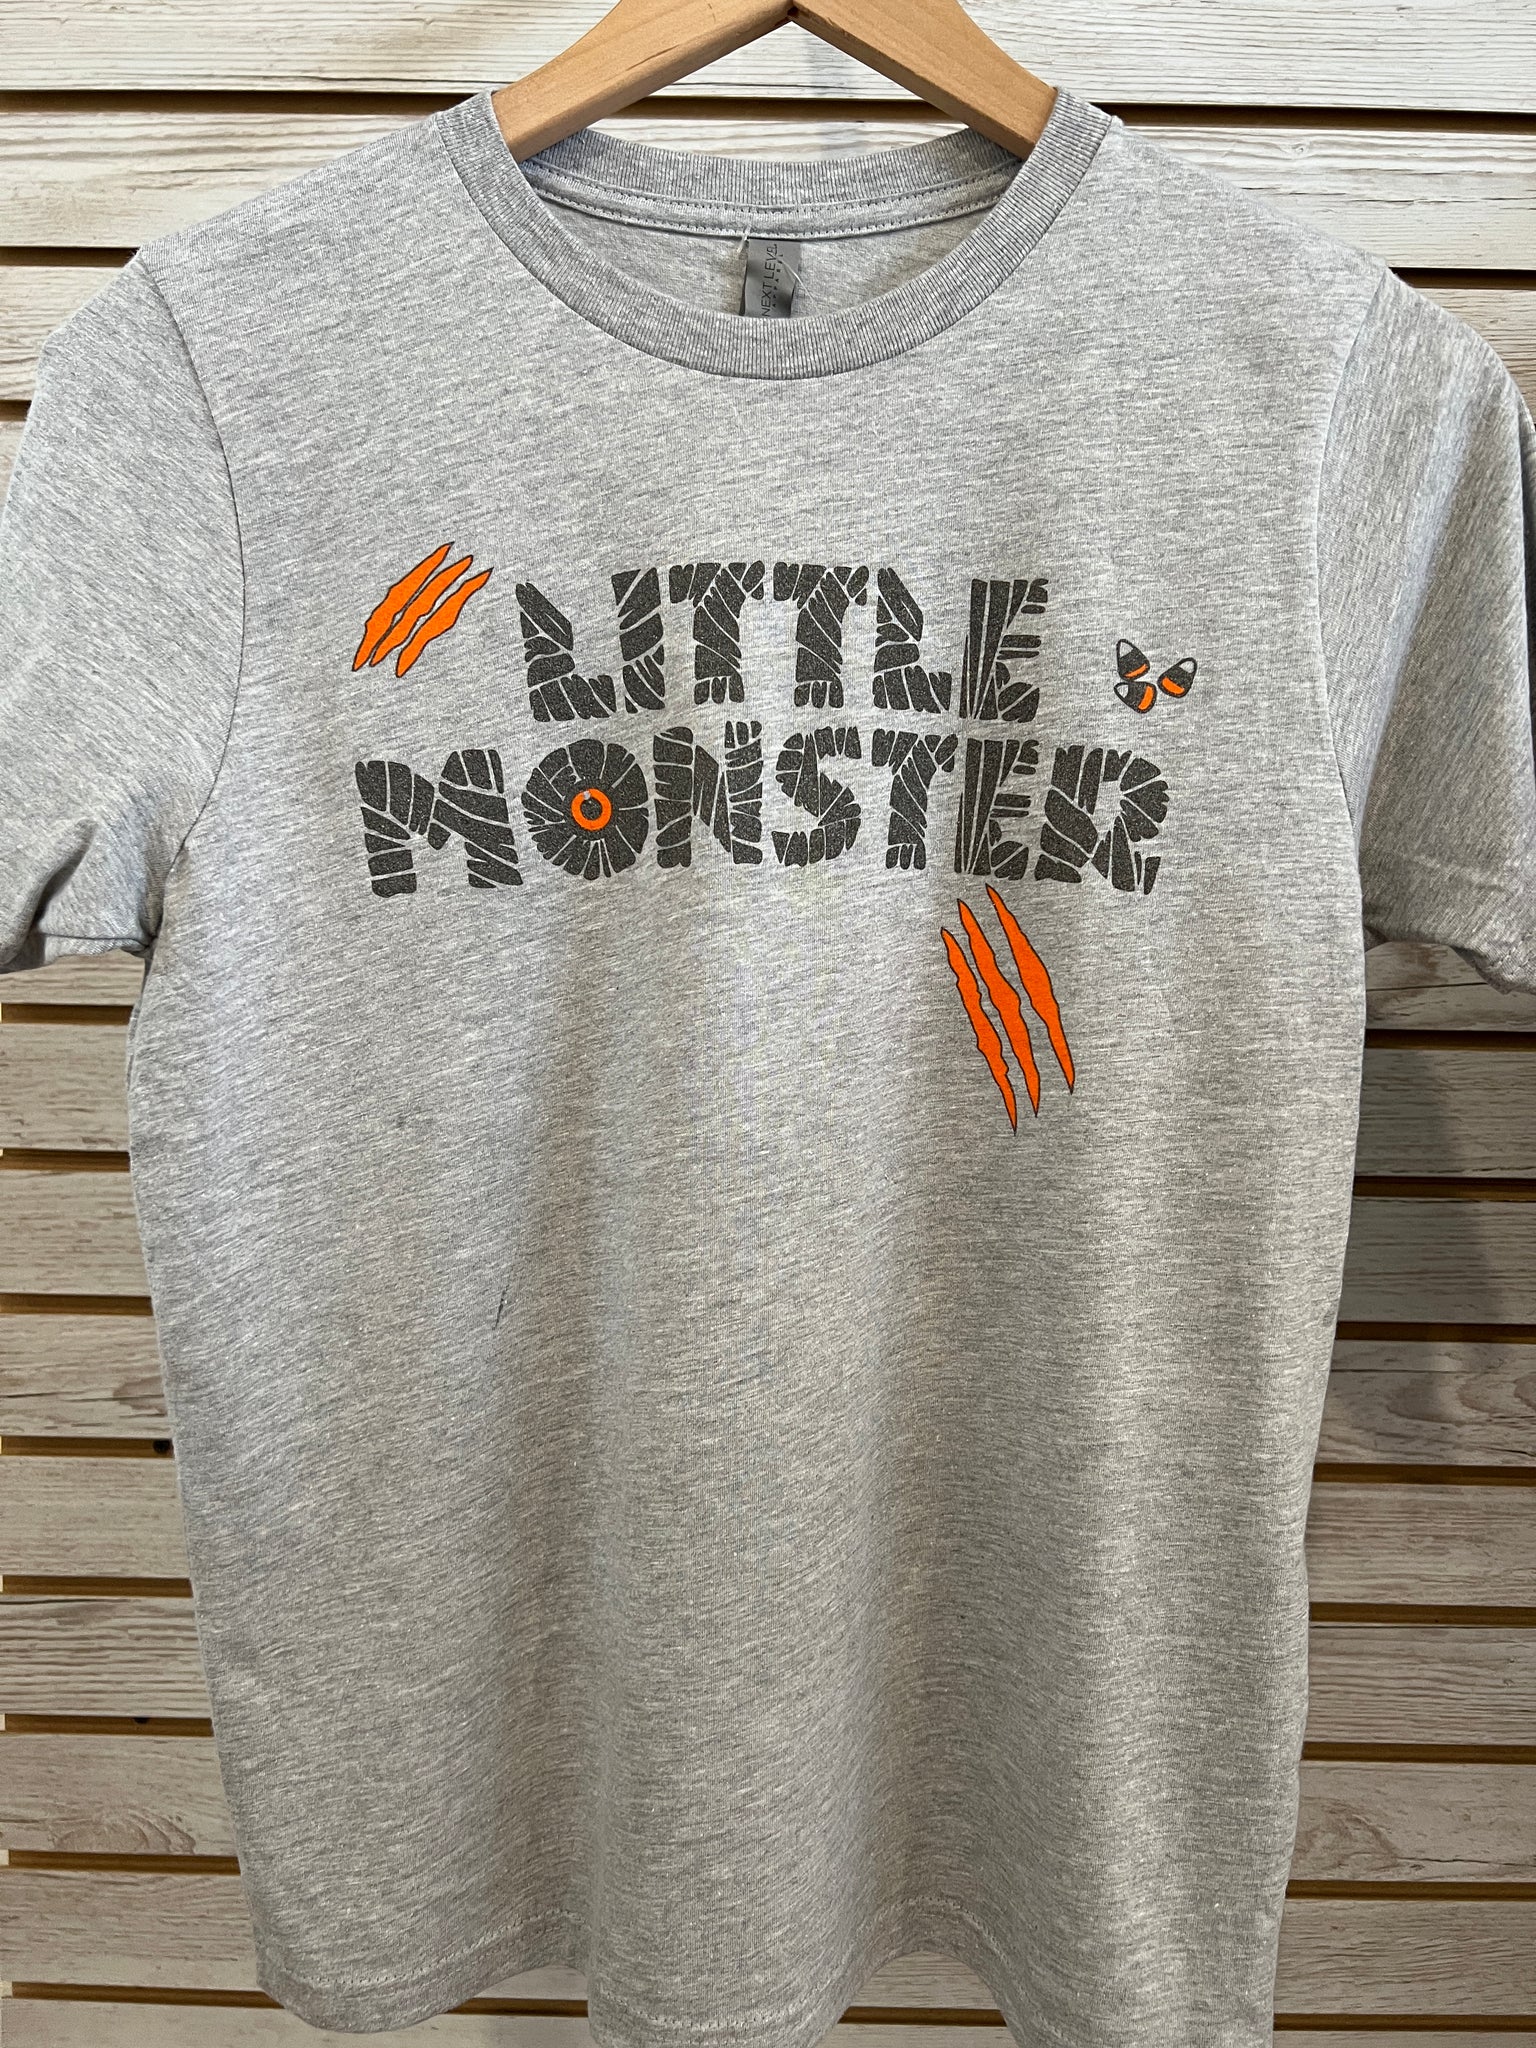 Little Monster - Youth Unisex T-Shirt